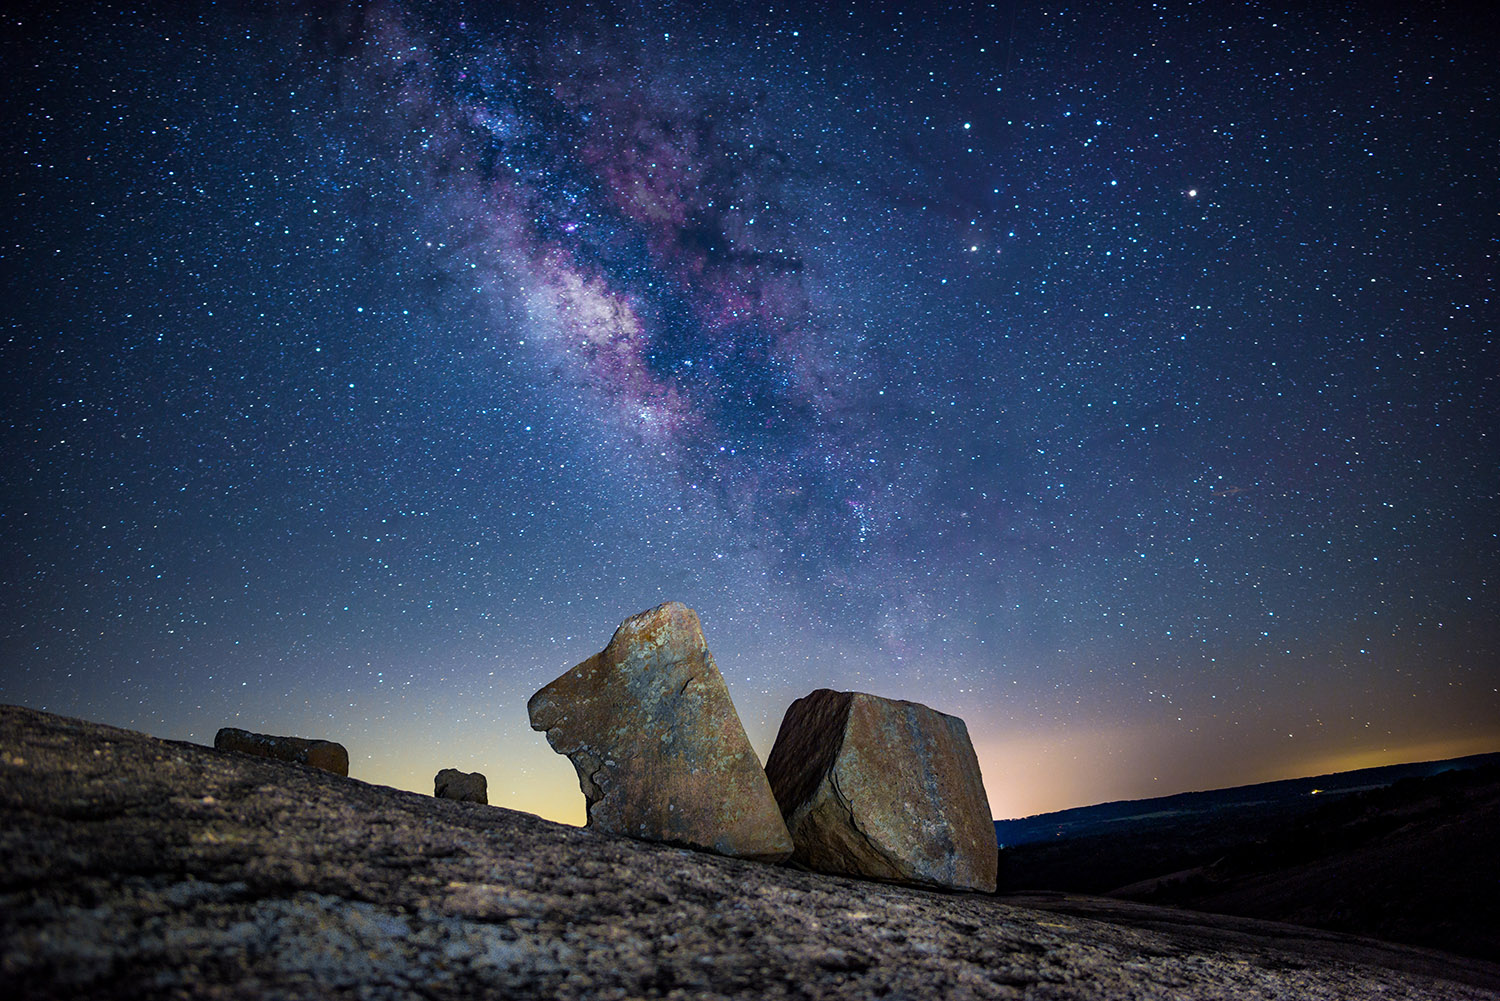 Stargazing at Enchanted Rock